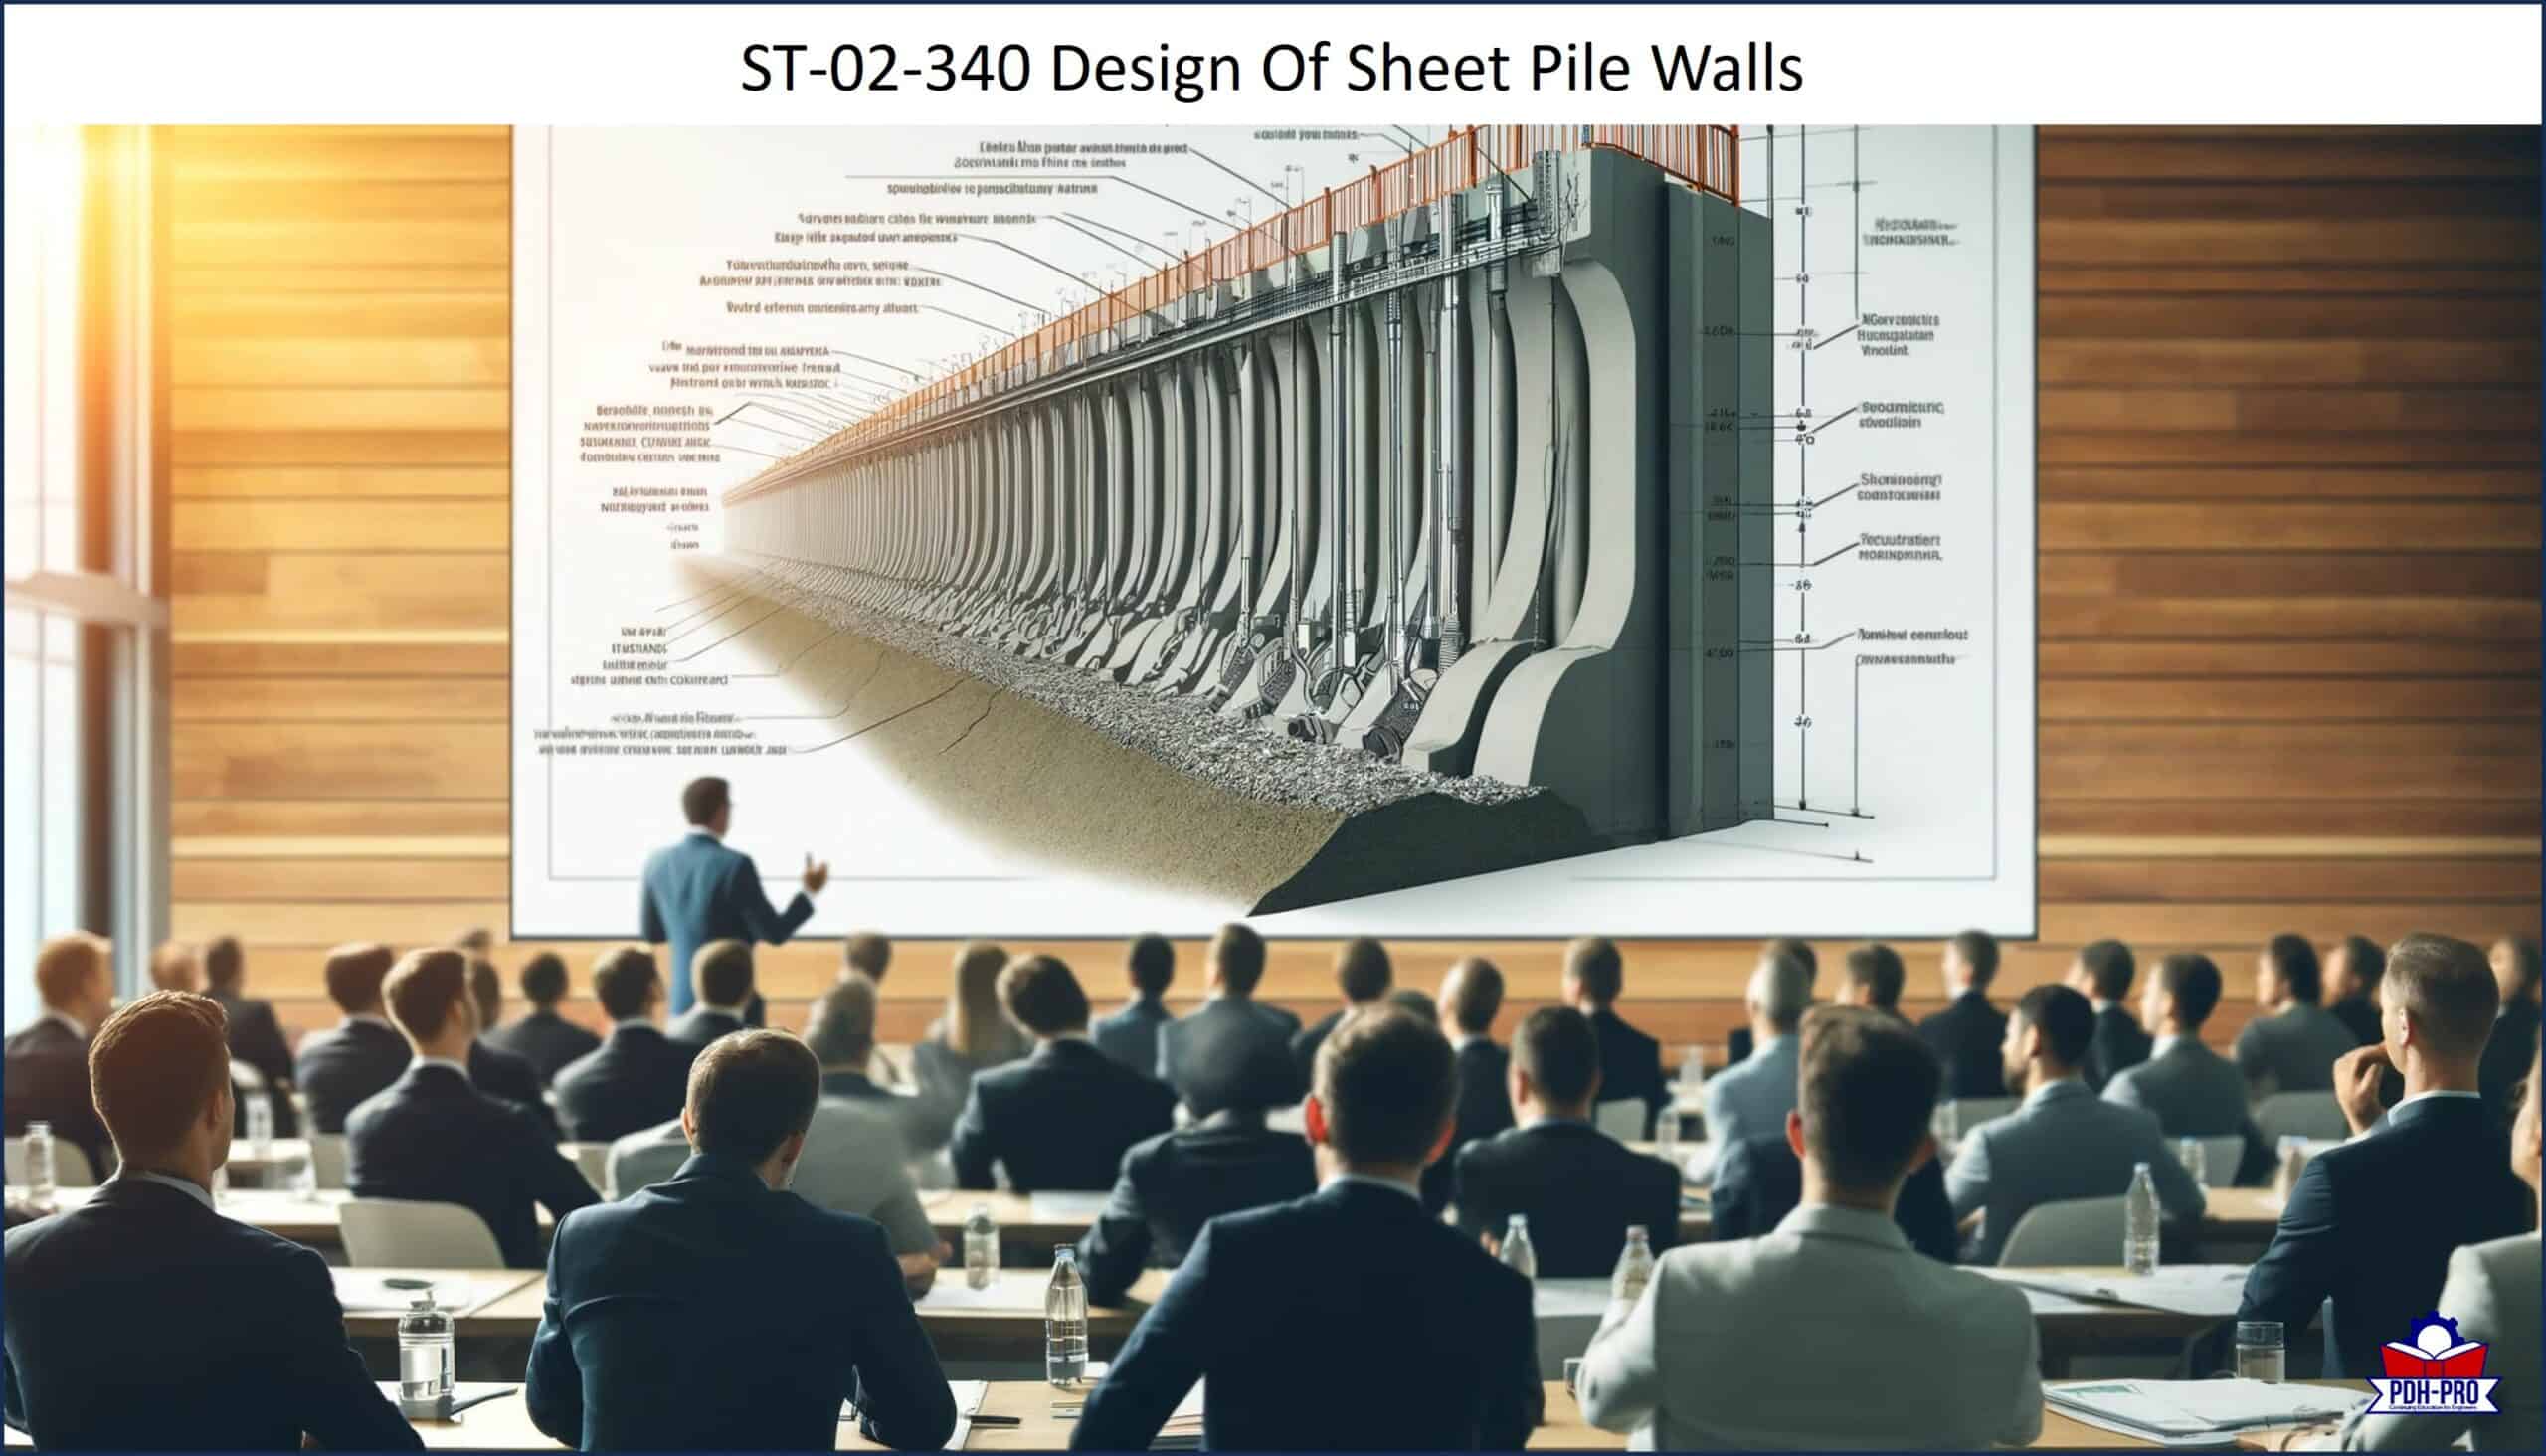 Design Of Sheet Pile Walls